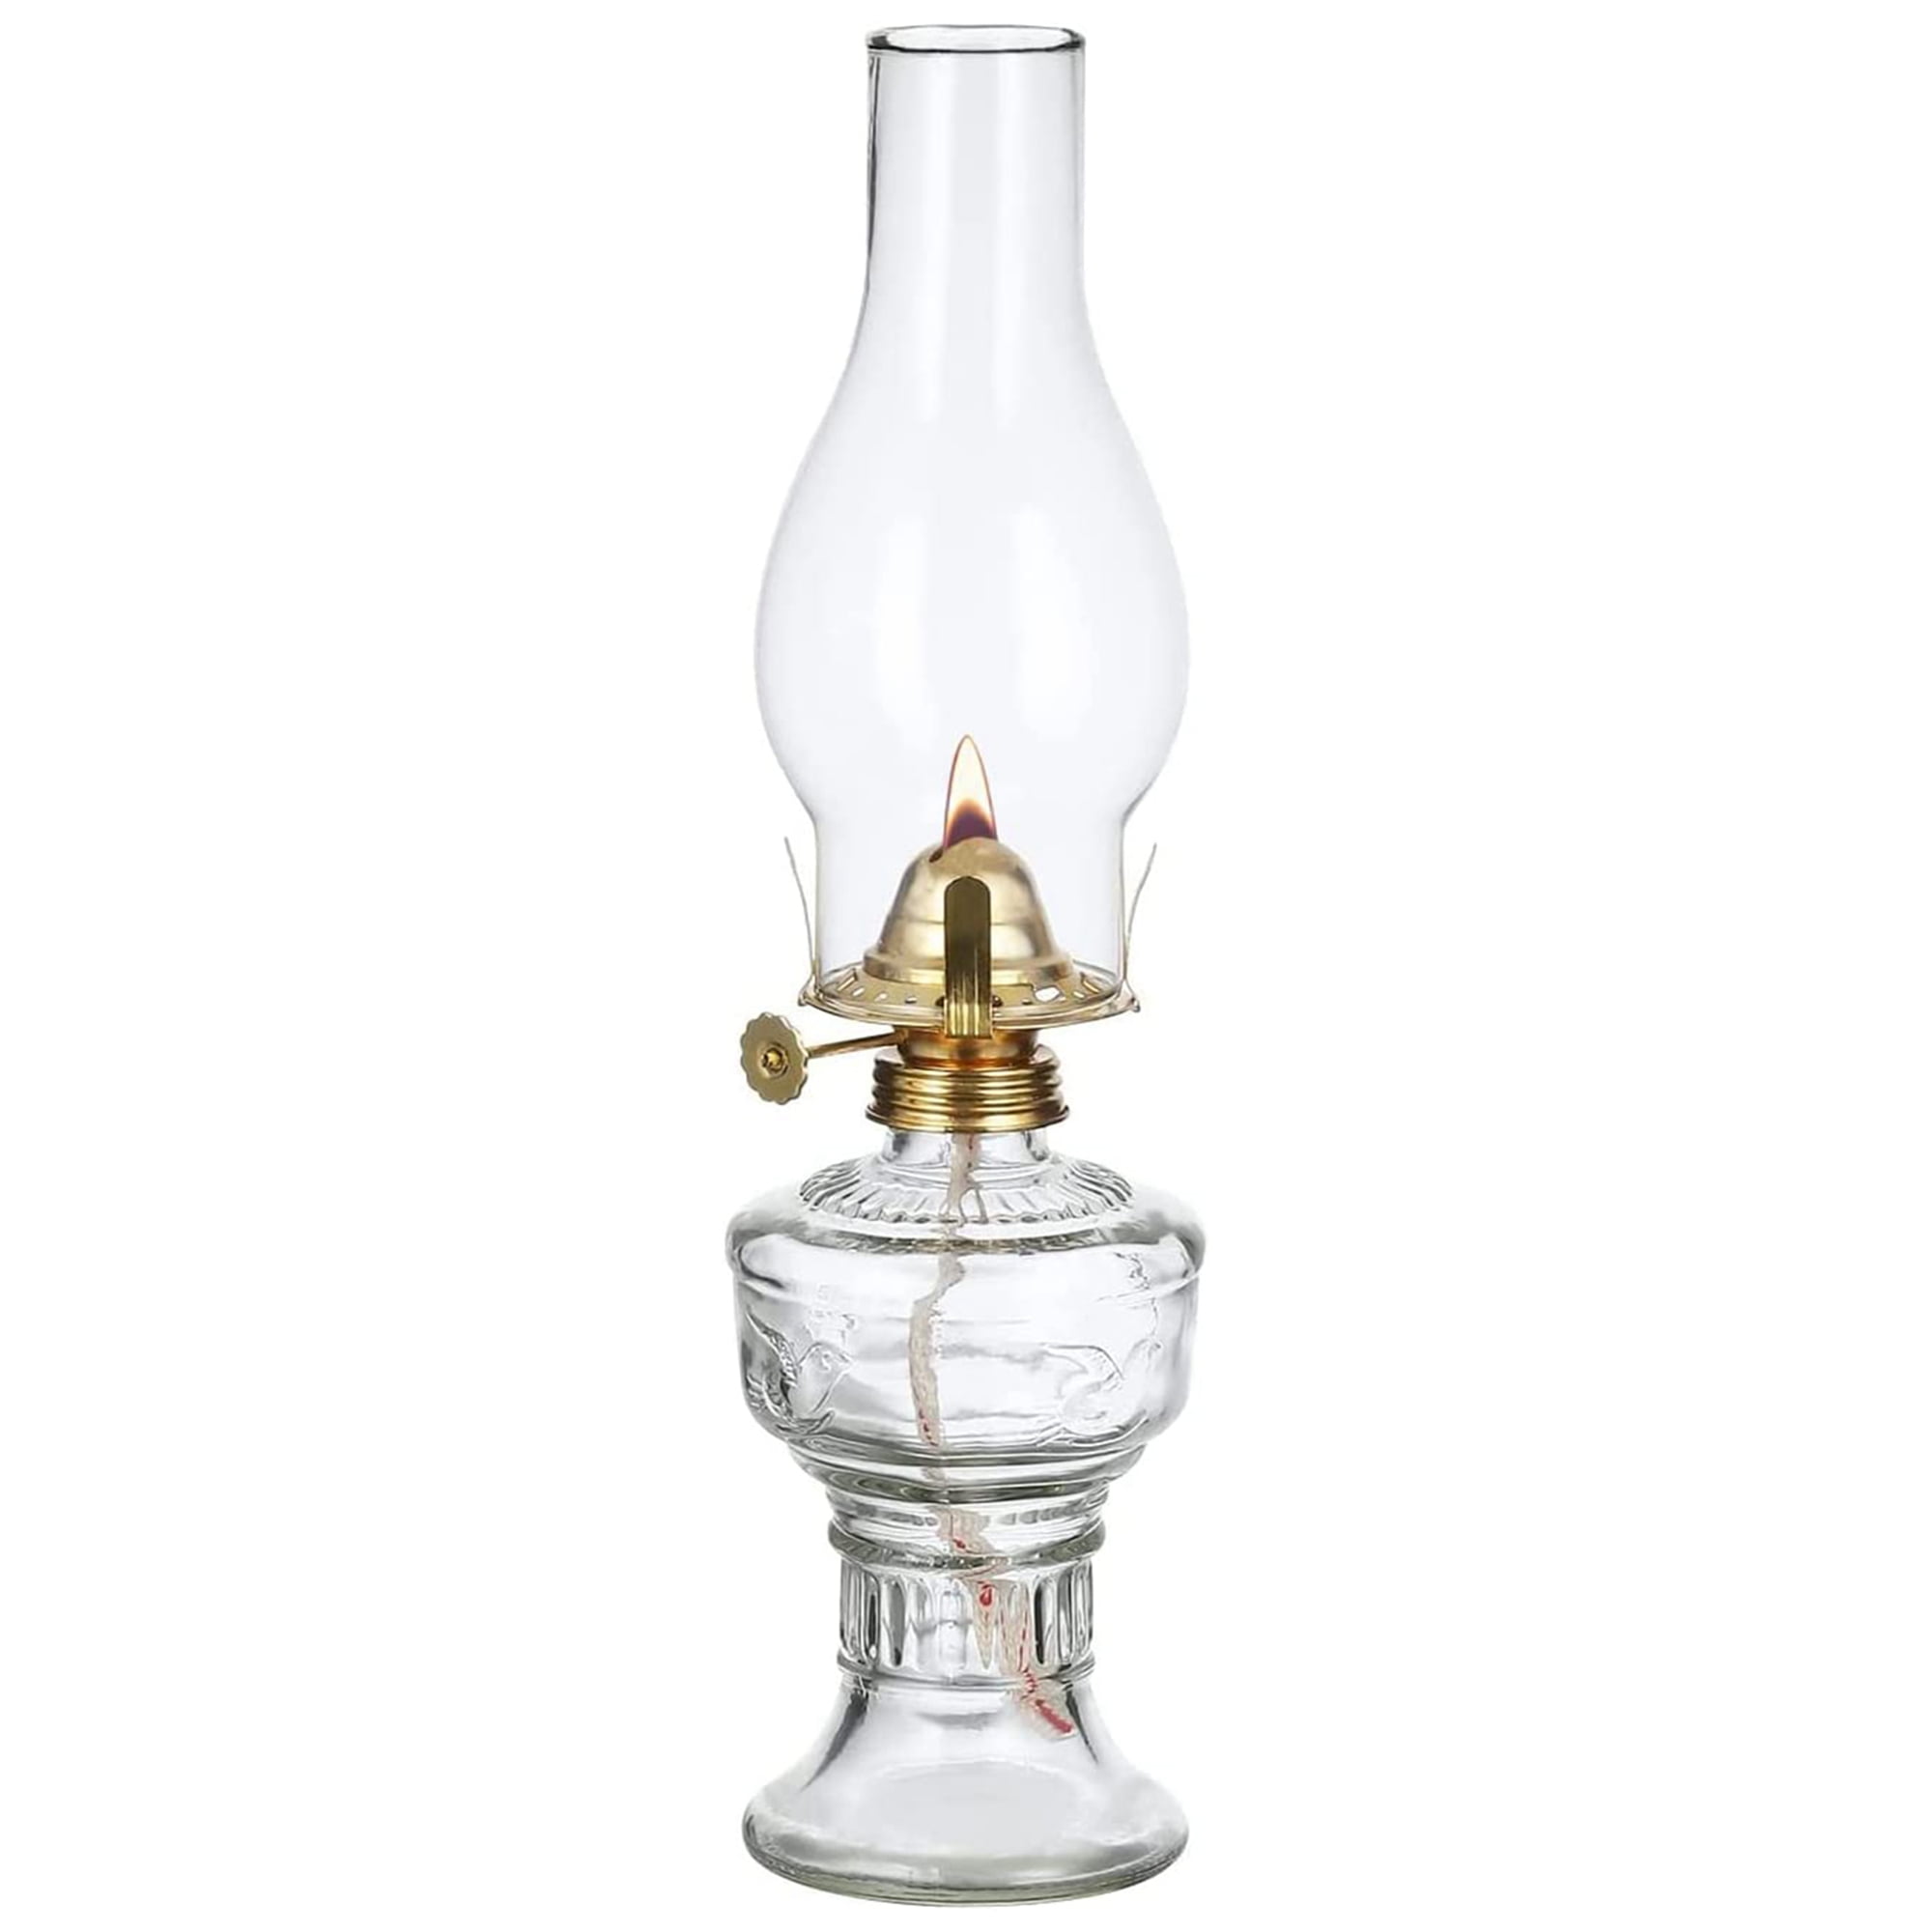 Oil Lamps for Indoor Use,2 Rustic Kerosene Lamps with Hurricane Glass  Chimney,Vintage Kerosene Lantern for Home Emergency Lighting,Farmhouse Decor